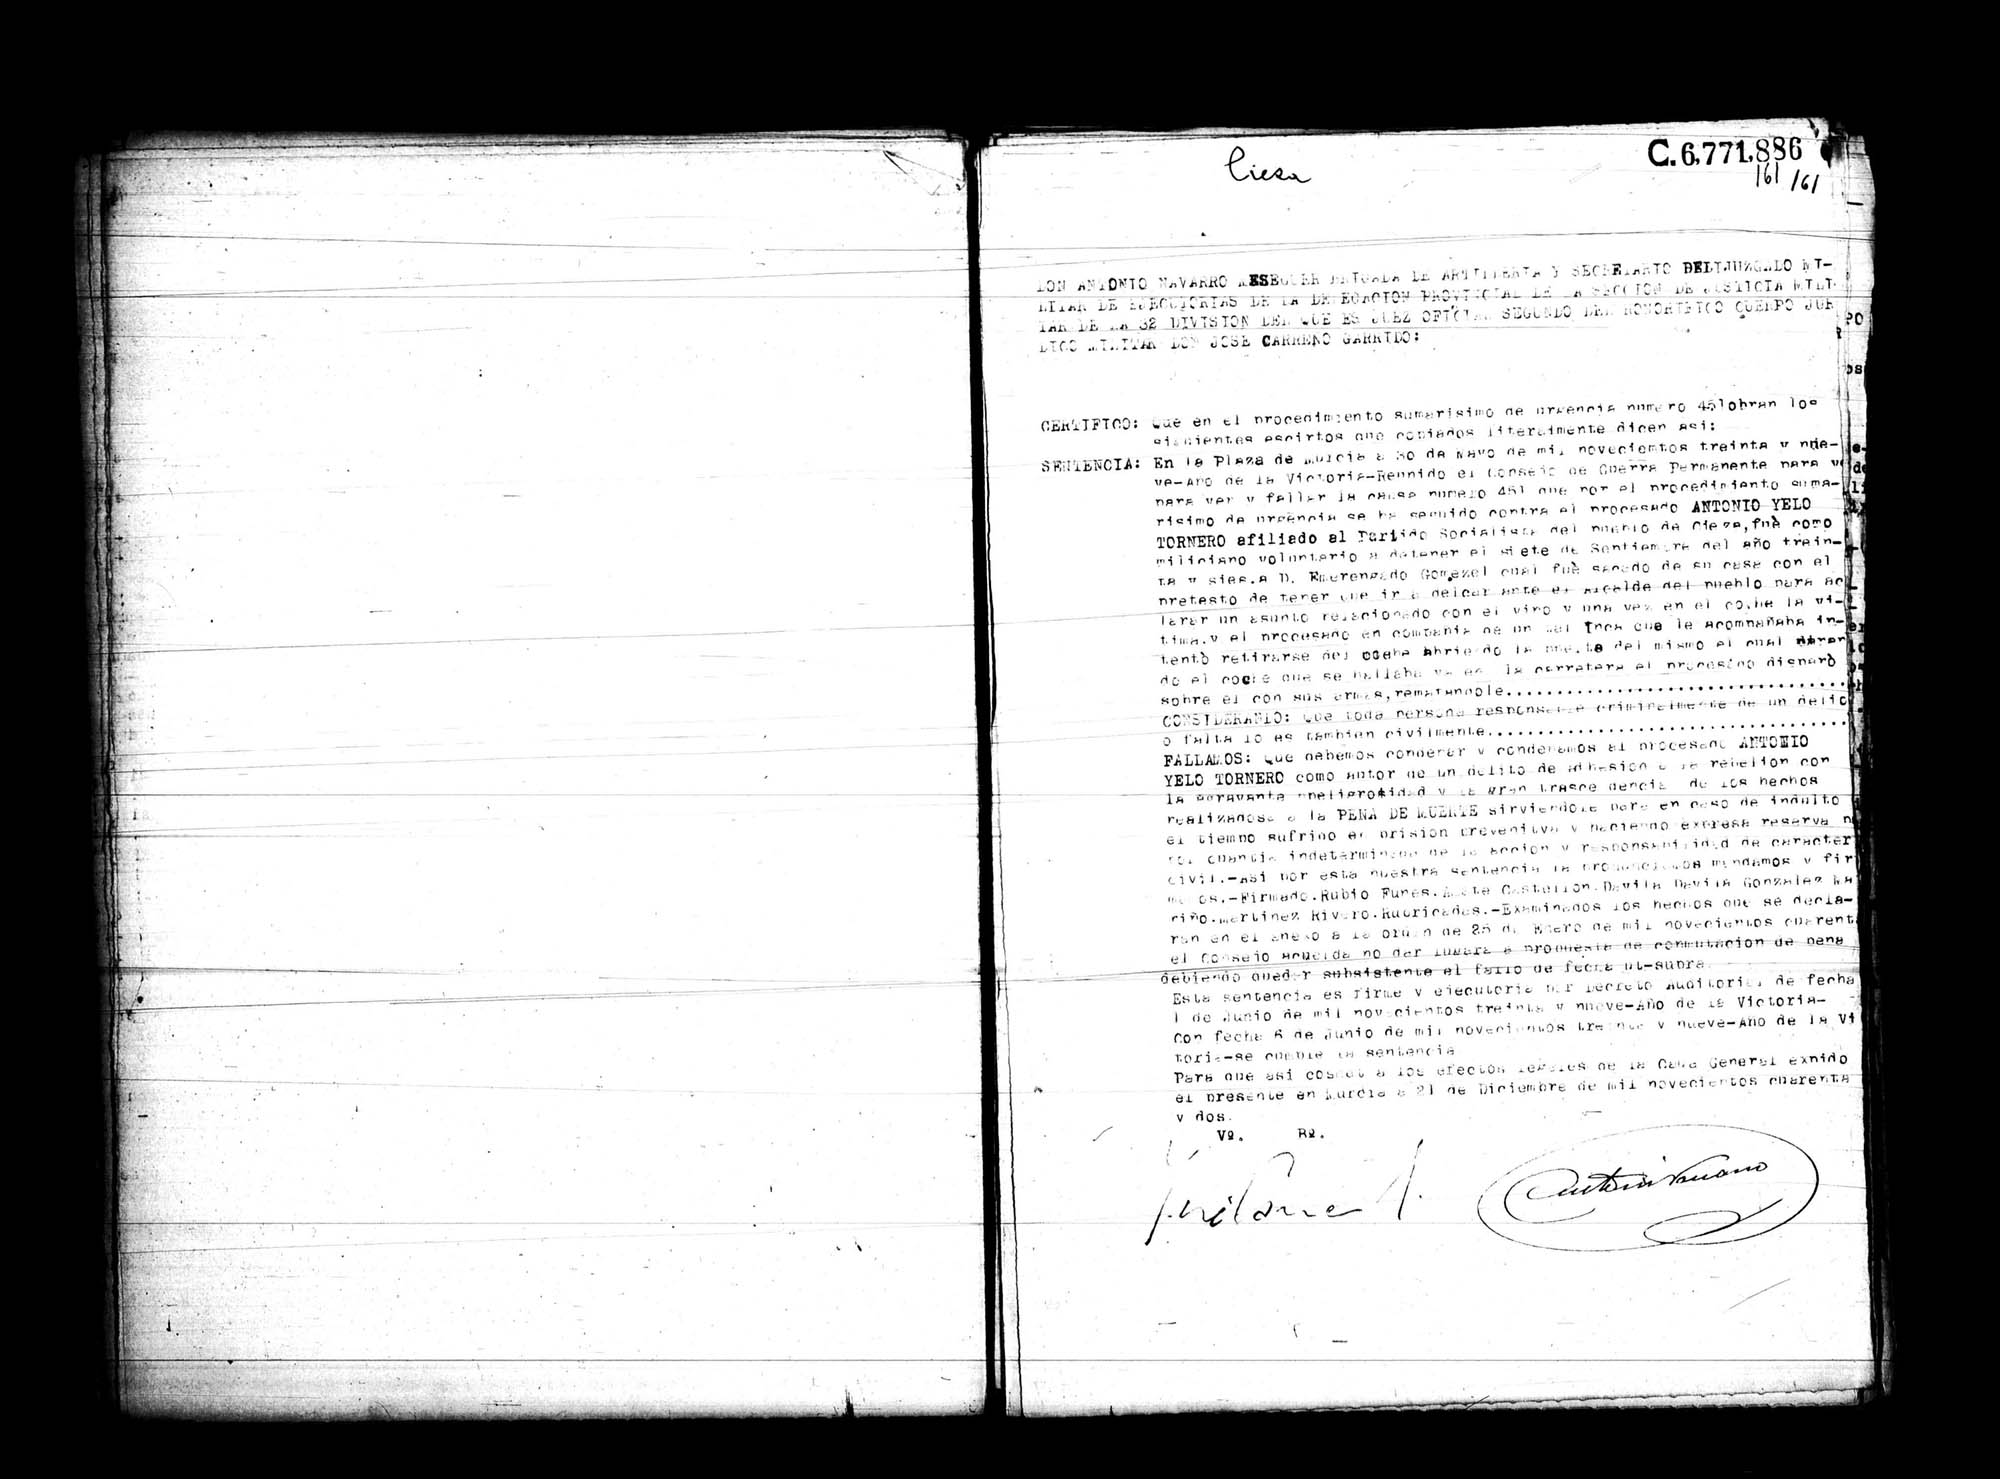 Certificado de la sentencia pronunciada contra Antonio Yelo Tornero, causa 451, el 30 de mayo de 1939 en Murcia.